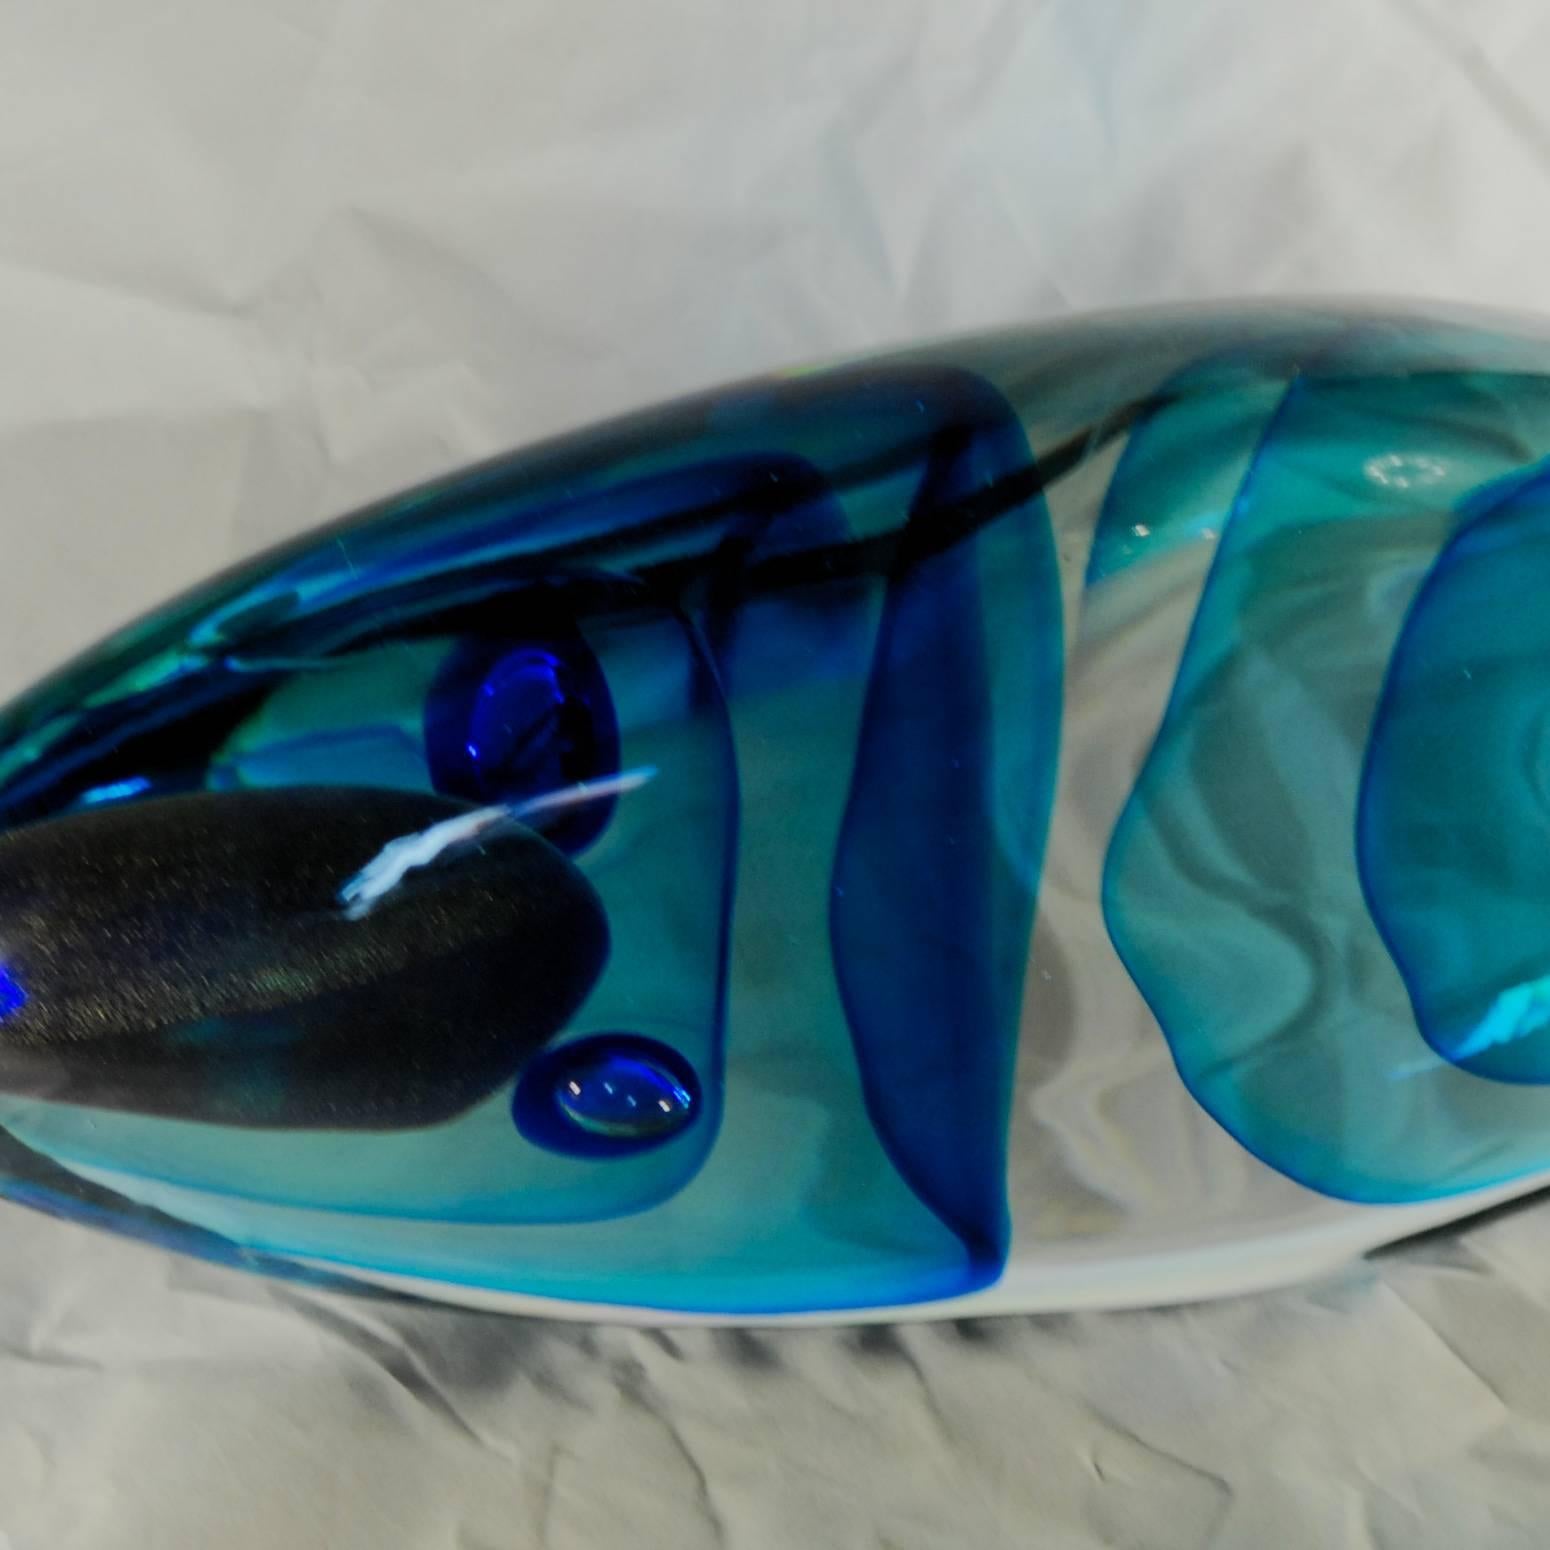 Italian Massiccio Alberto Donà Incalmo Fish with Sbruffi Glass Casing over Sommerso